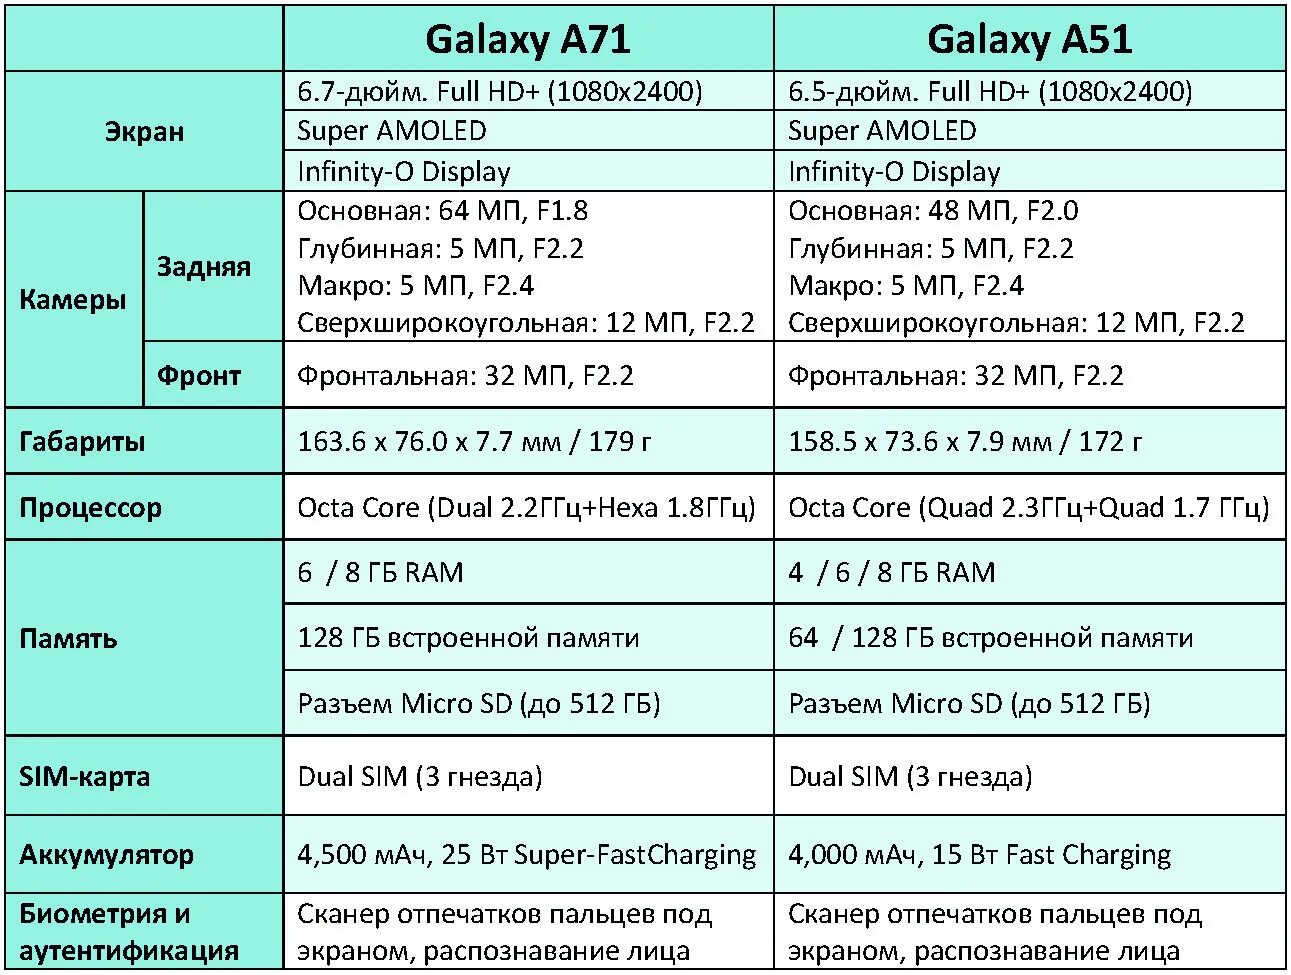 Самсунг а51 характеристики. Samsung a51 характеристики. Самсунг а51 характеристики характеристики. Процессор галакси а51.